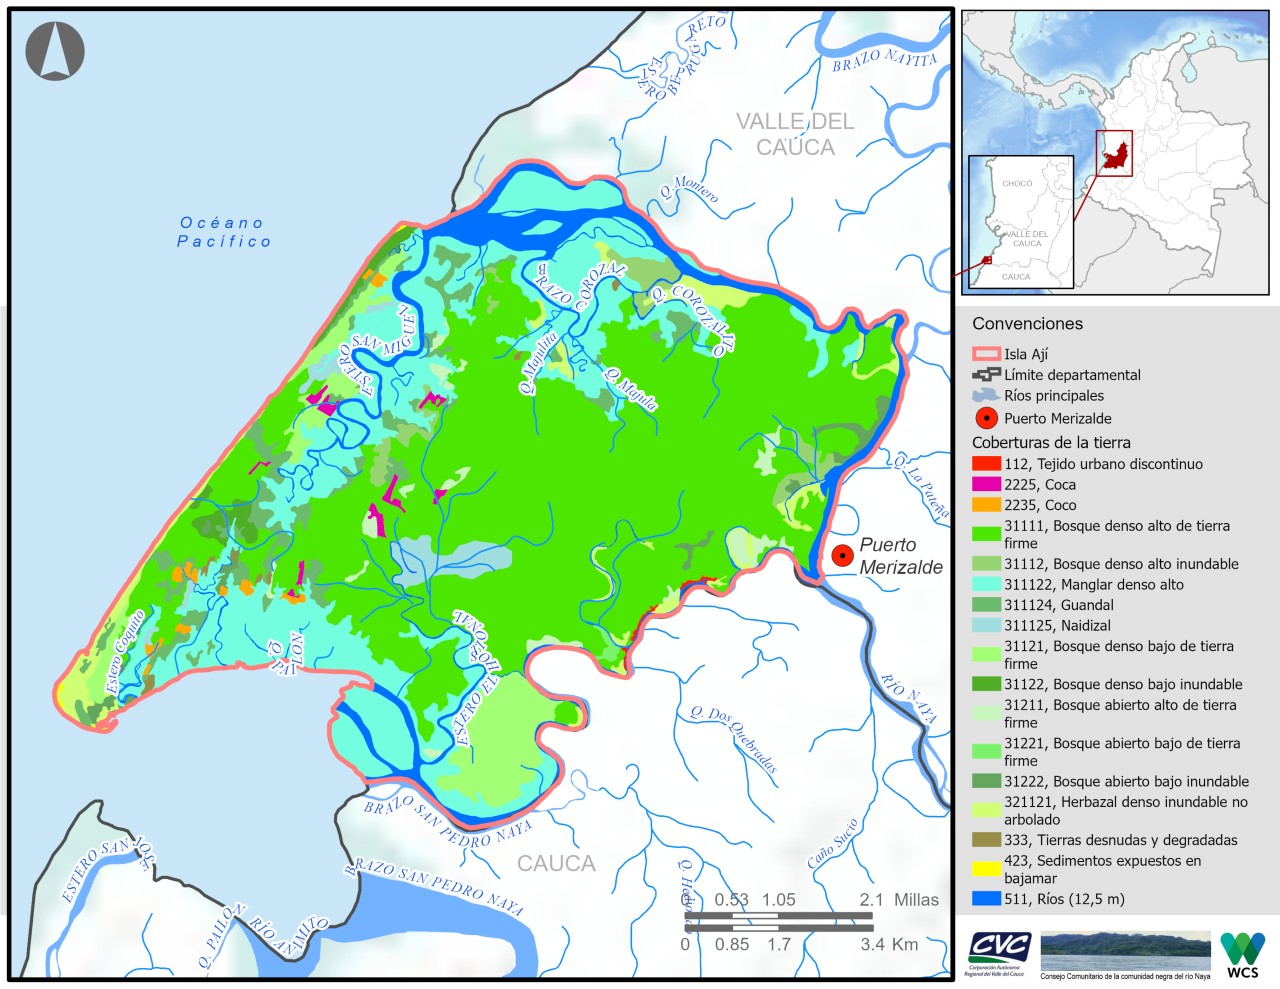 La Isla Ají será parte de las áreas protegidas para salvaguardar la naturaleza. - Mapa rewild/Twitter